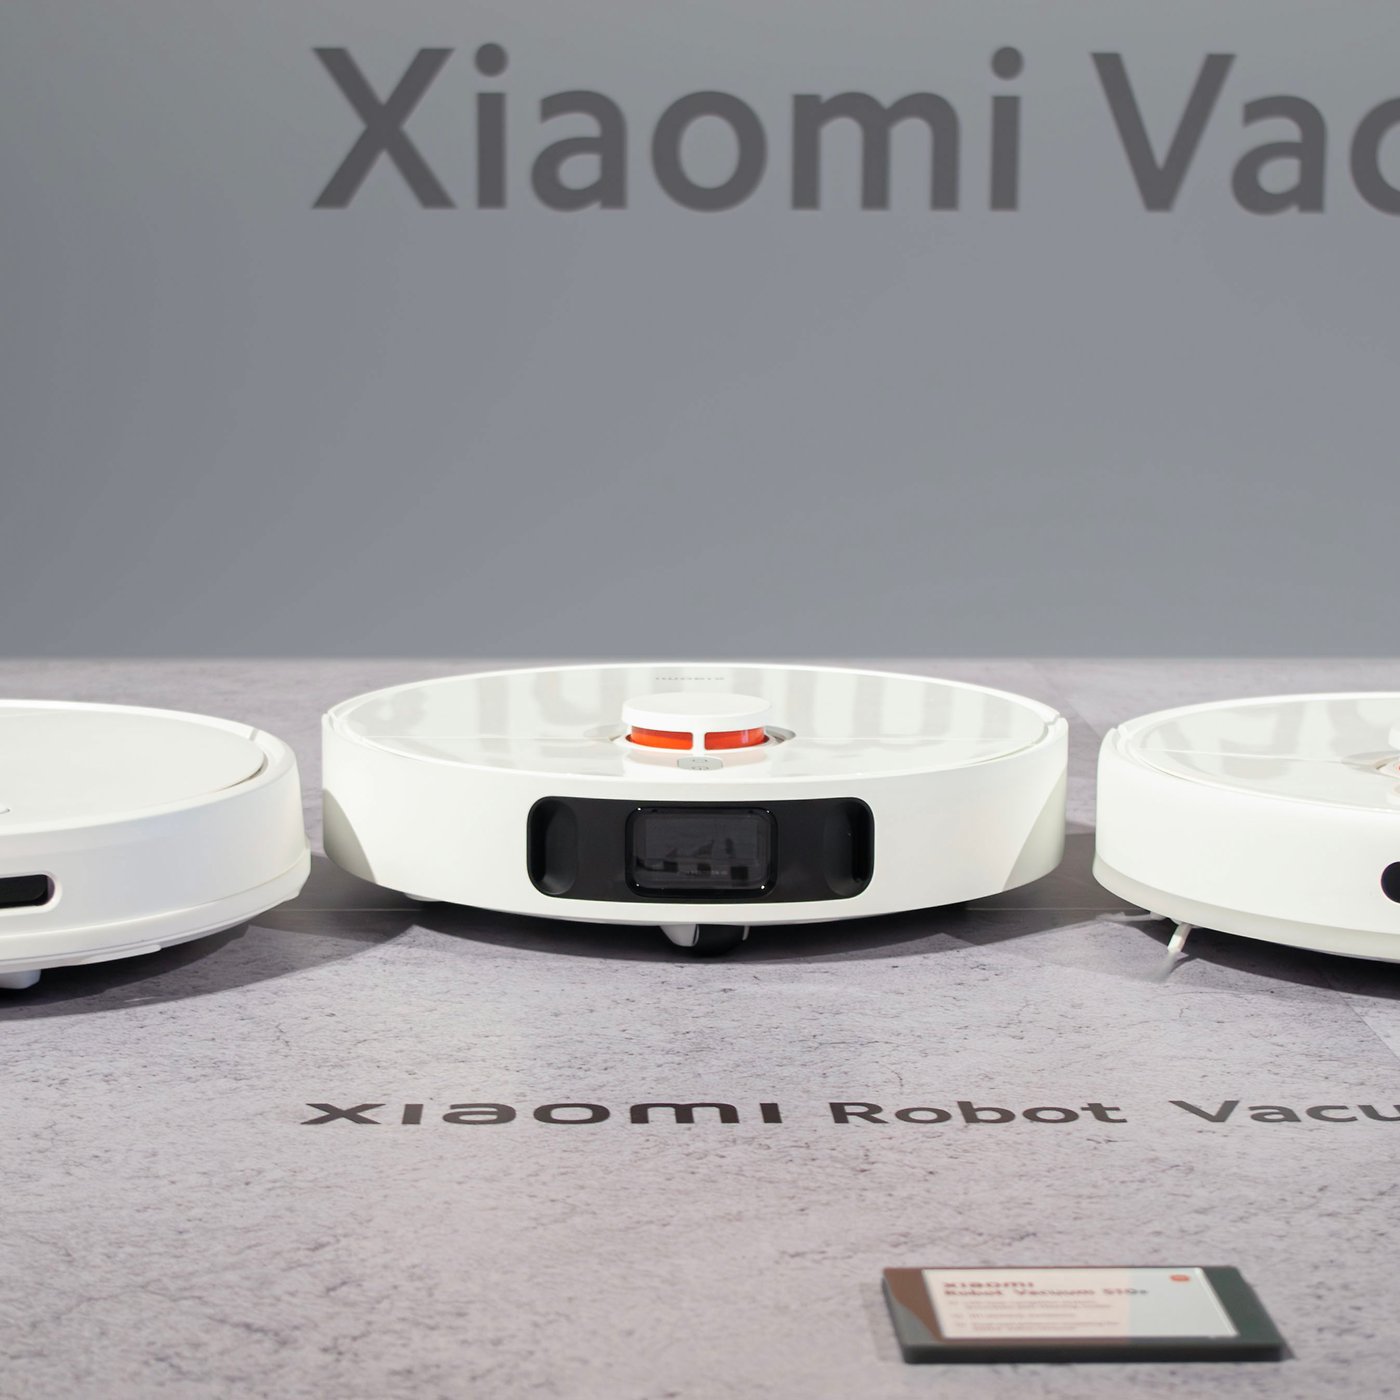 New Xiaomi Vacuum Robots Compared: X10 vs X10+, S10 vs S12+